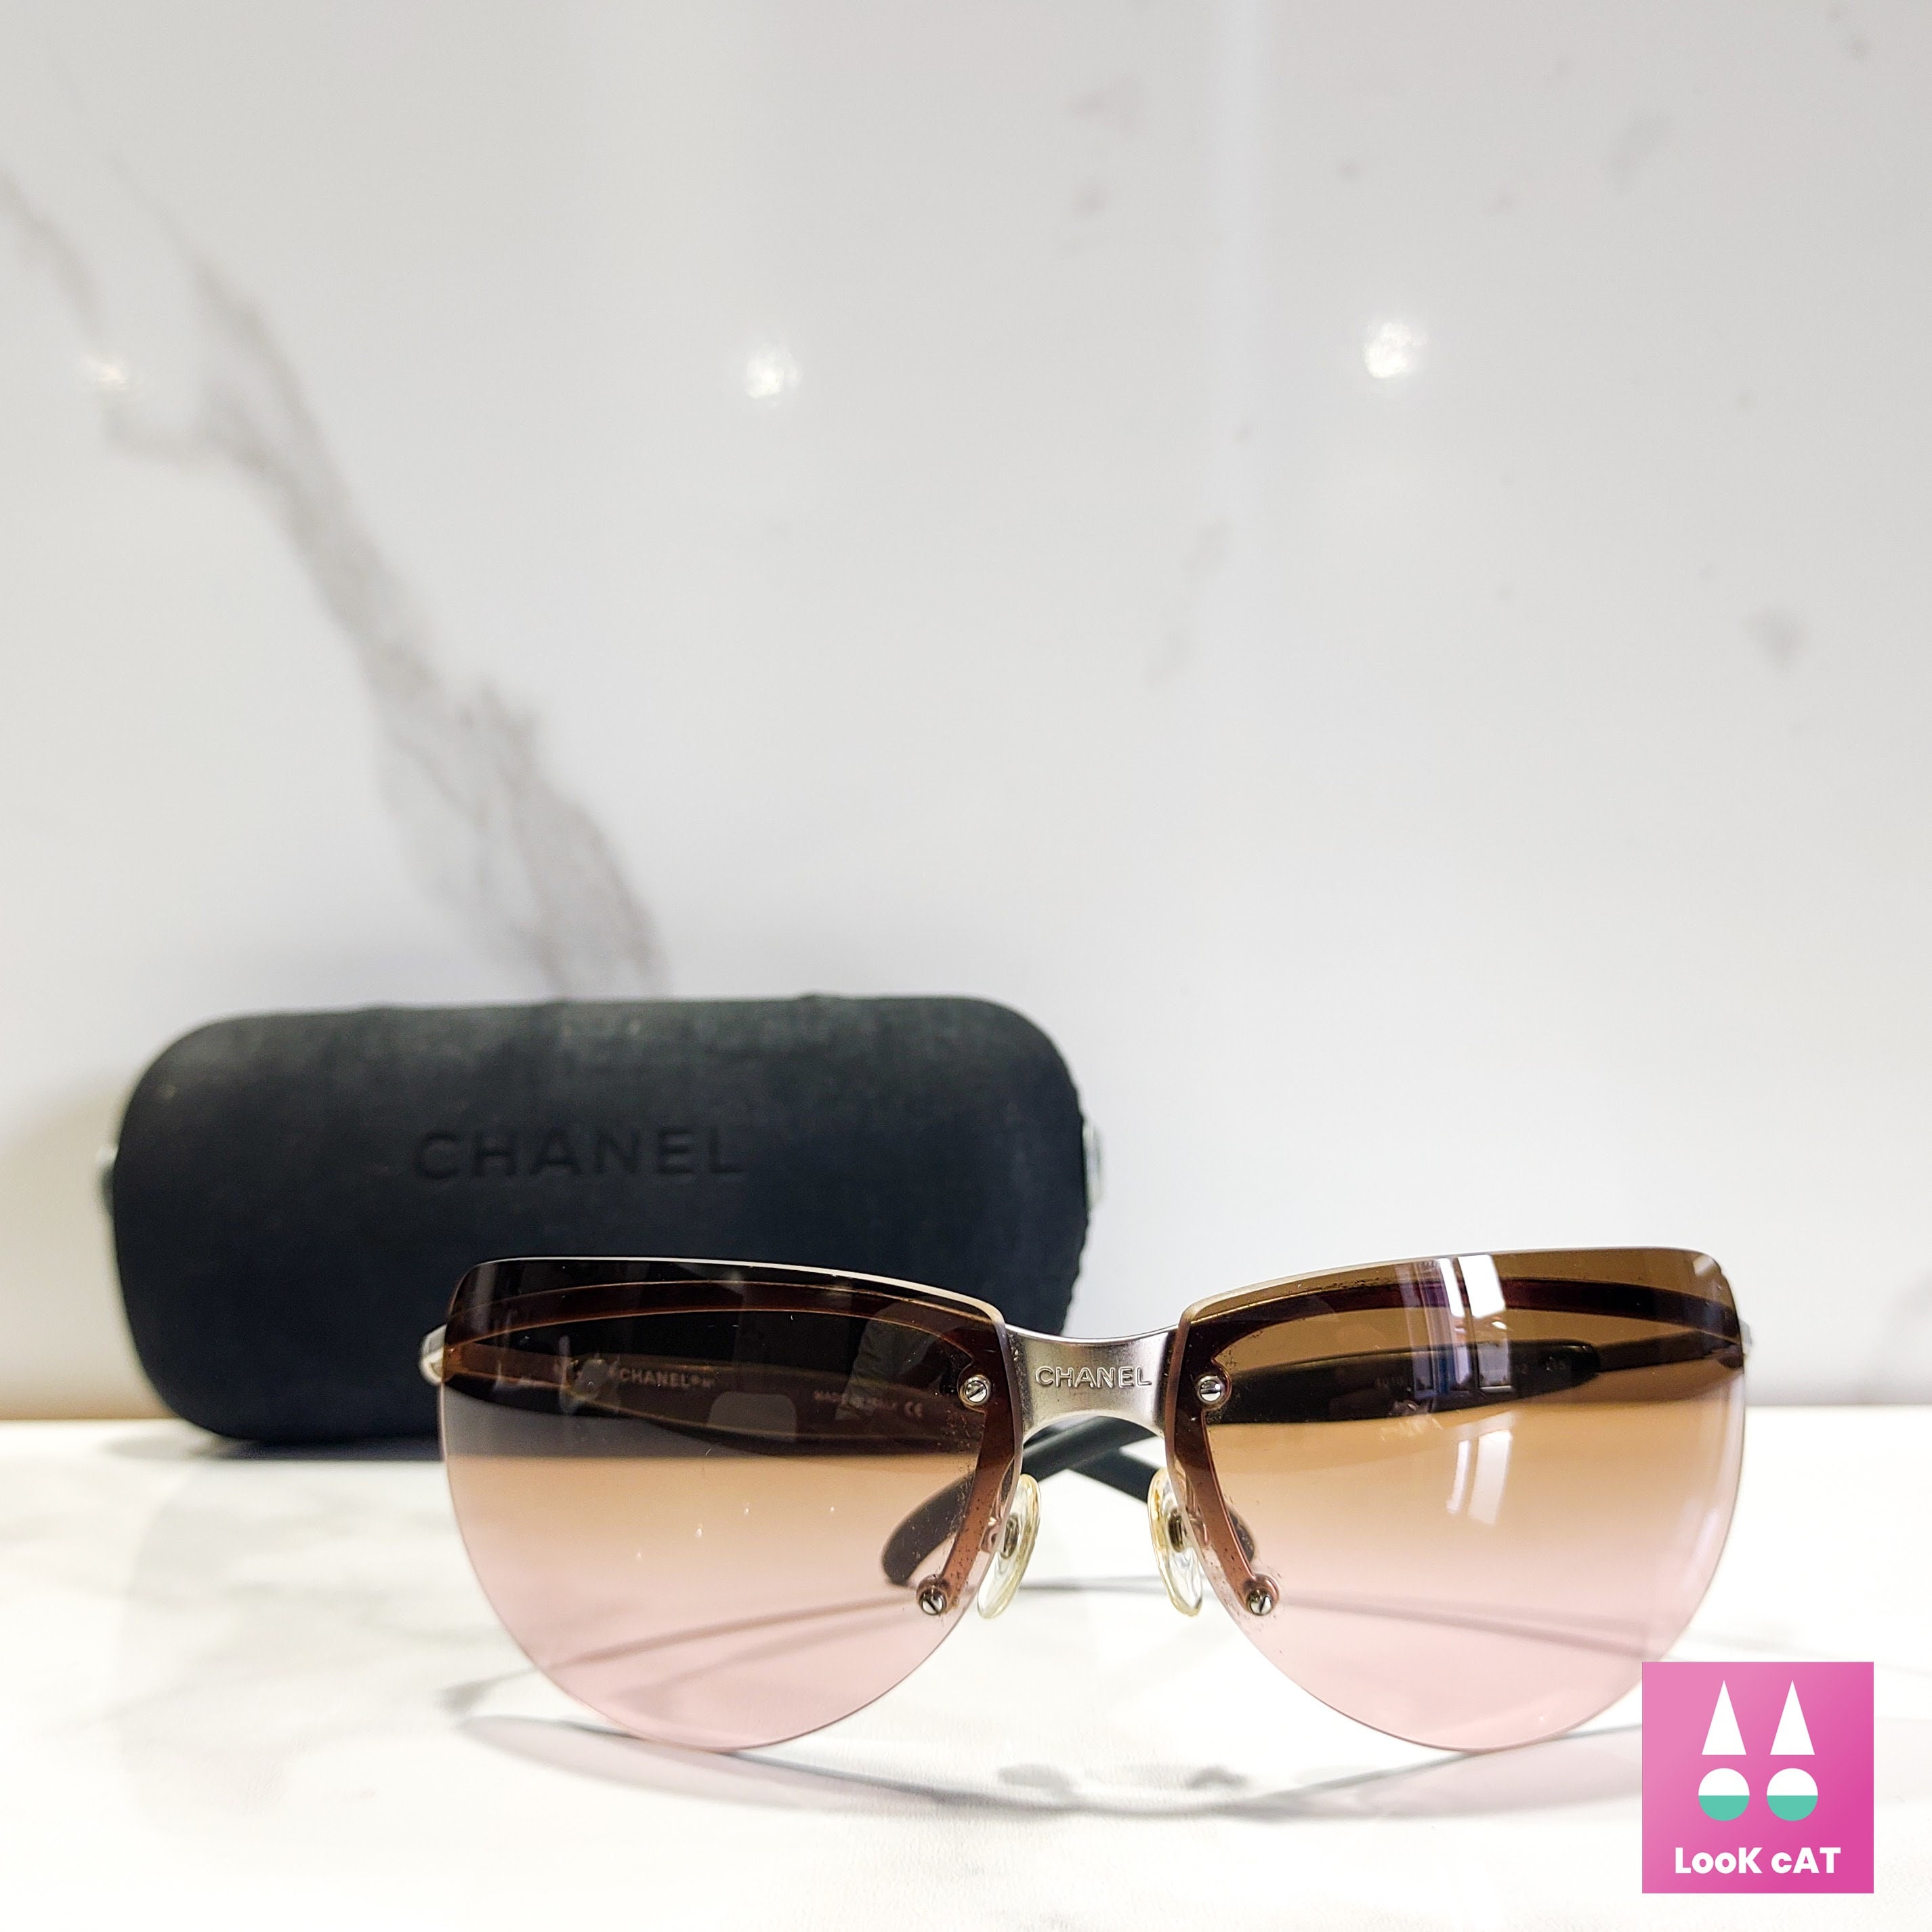 Chanel Eyeglasses Clear Brown 3064-B Limited Edition Swarovski